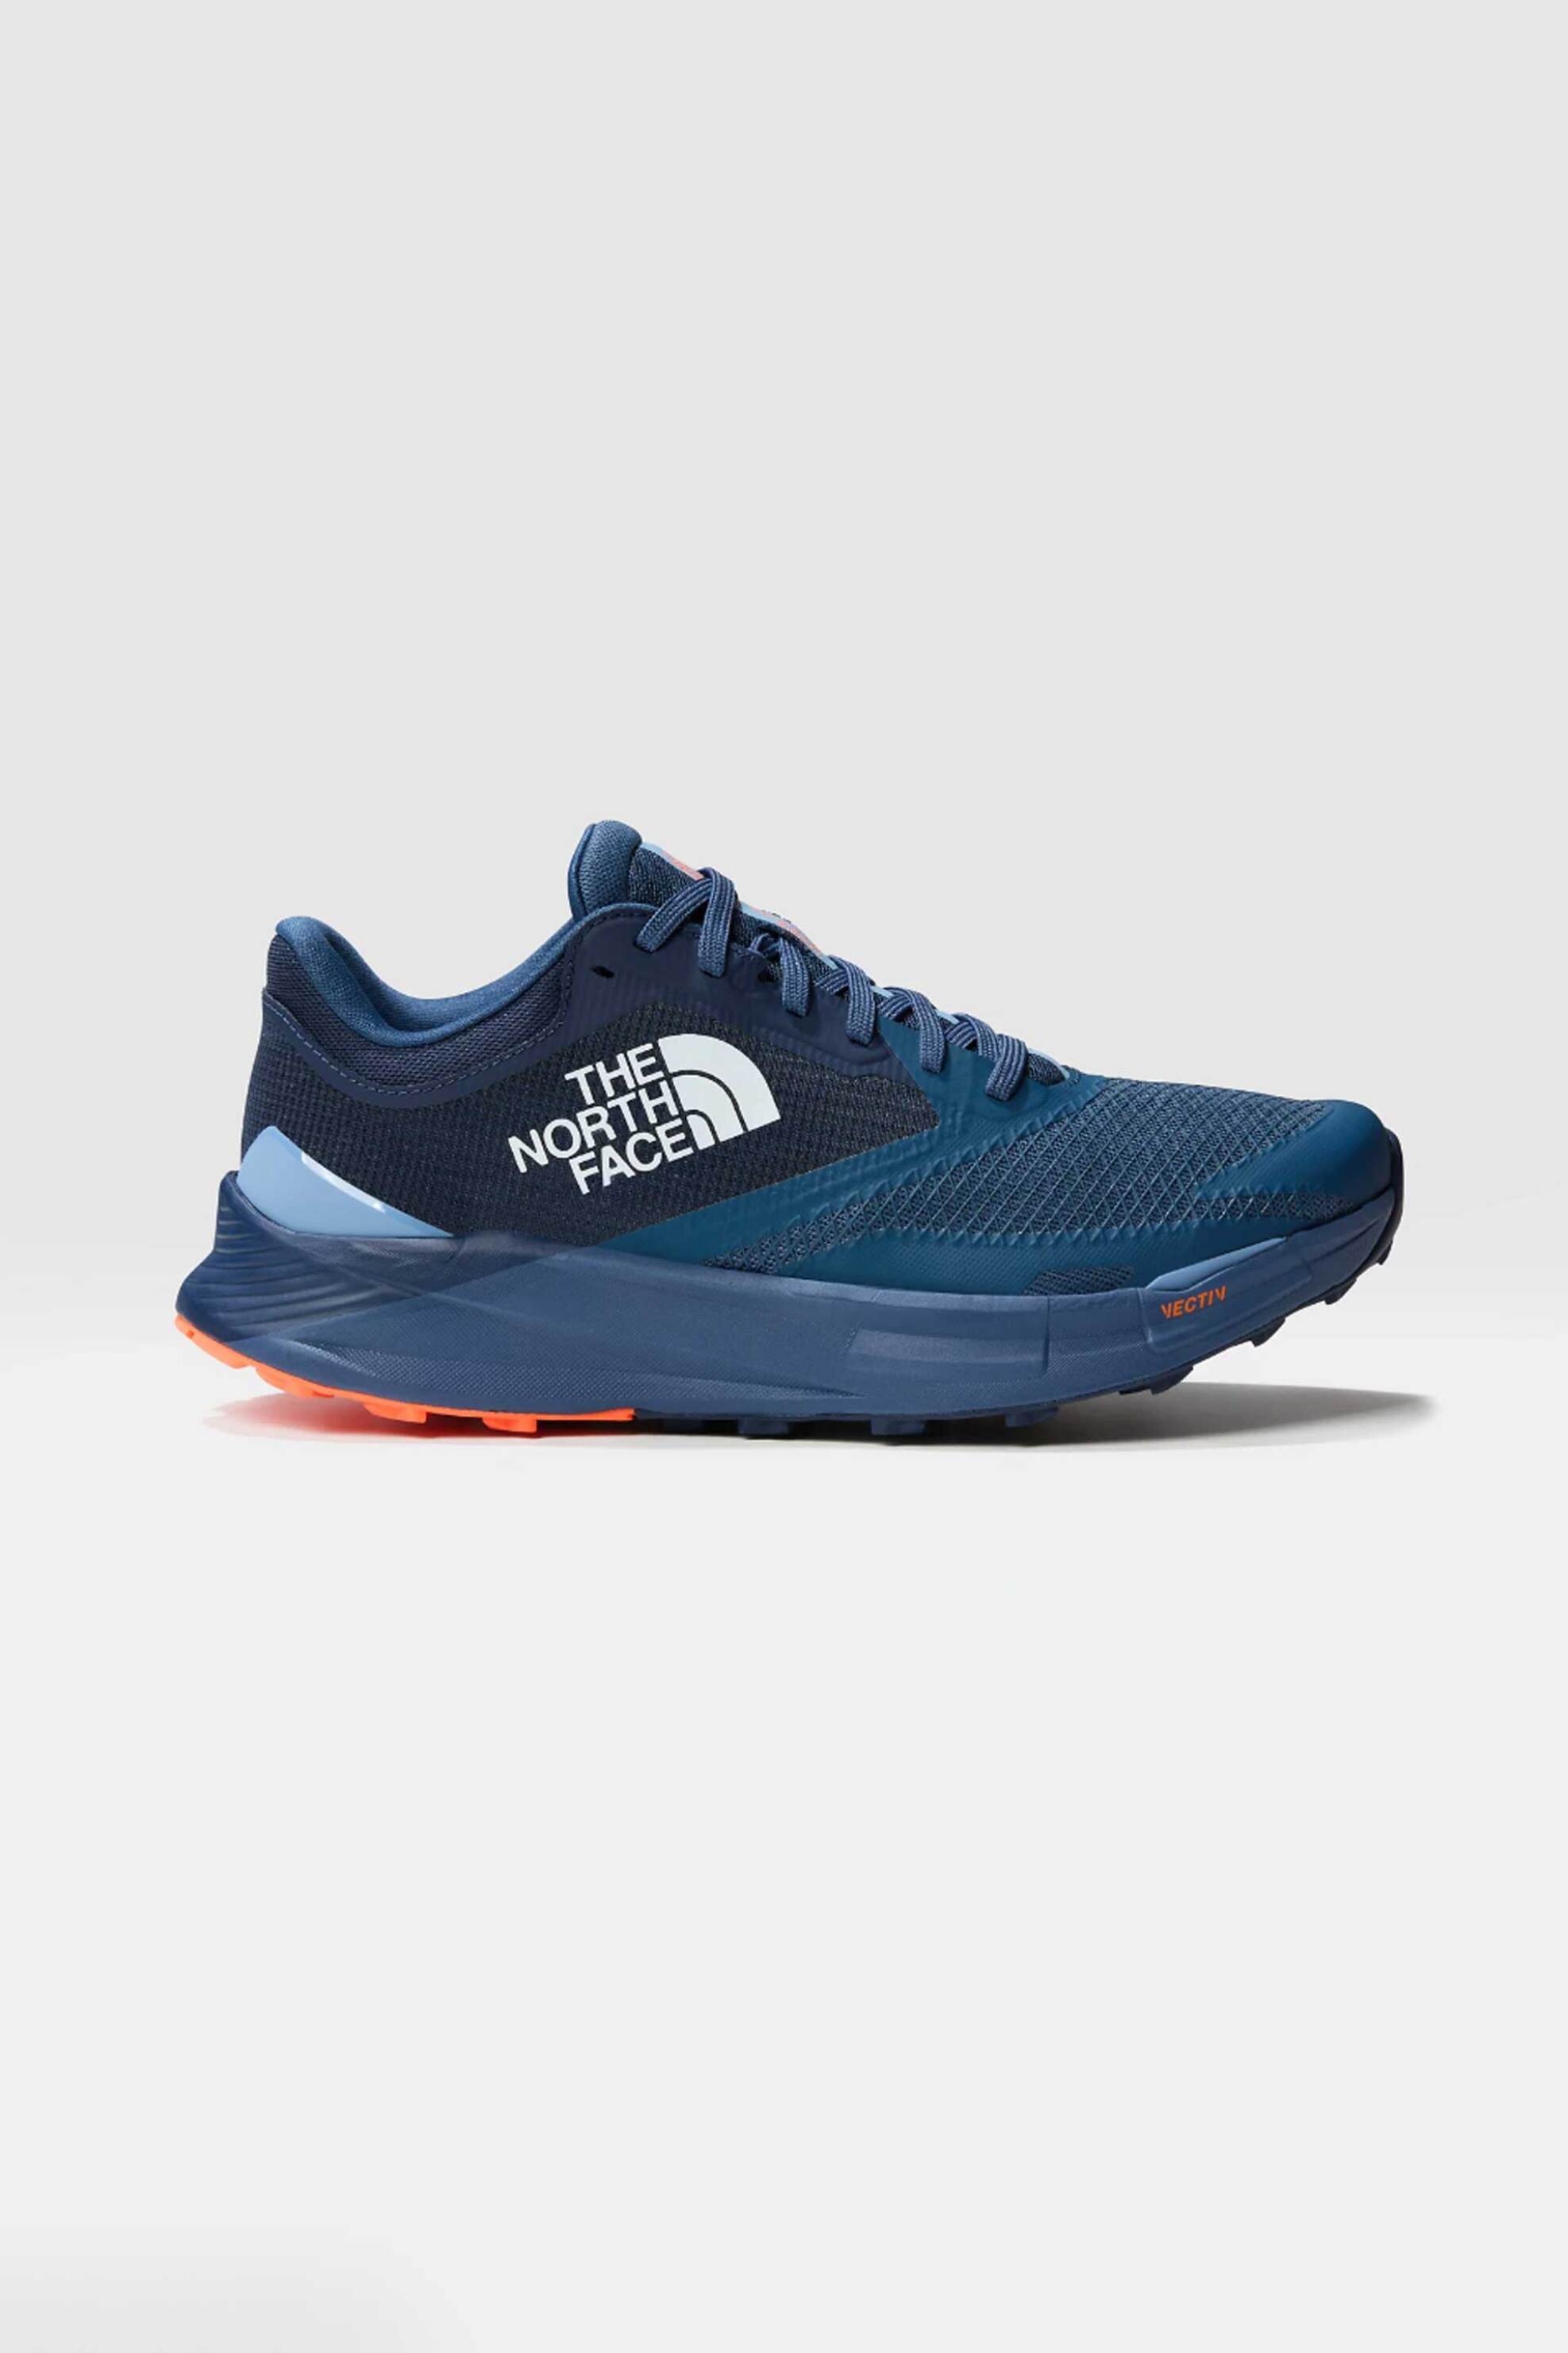 Ανδρική Μόδα > Ανδρικά Αθλητικά > Ανδρικά Αθλητικά Παπούτσια > Ανδρικά Αθλητικά Παπούτσια για Τρέξιμο The North Face ανδρικά sneakers running μονόχρωμα "Vectiv™ Enduris III Trail" - NF0A7W5O9261 Μπλε